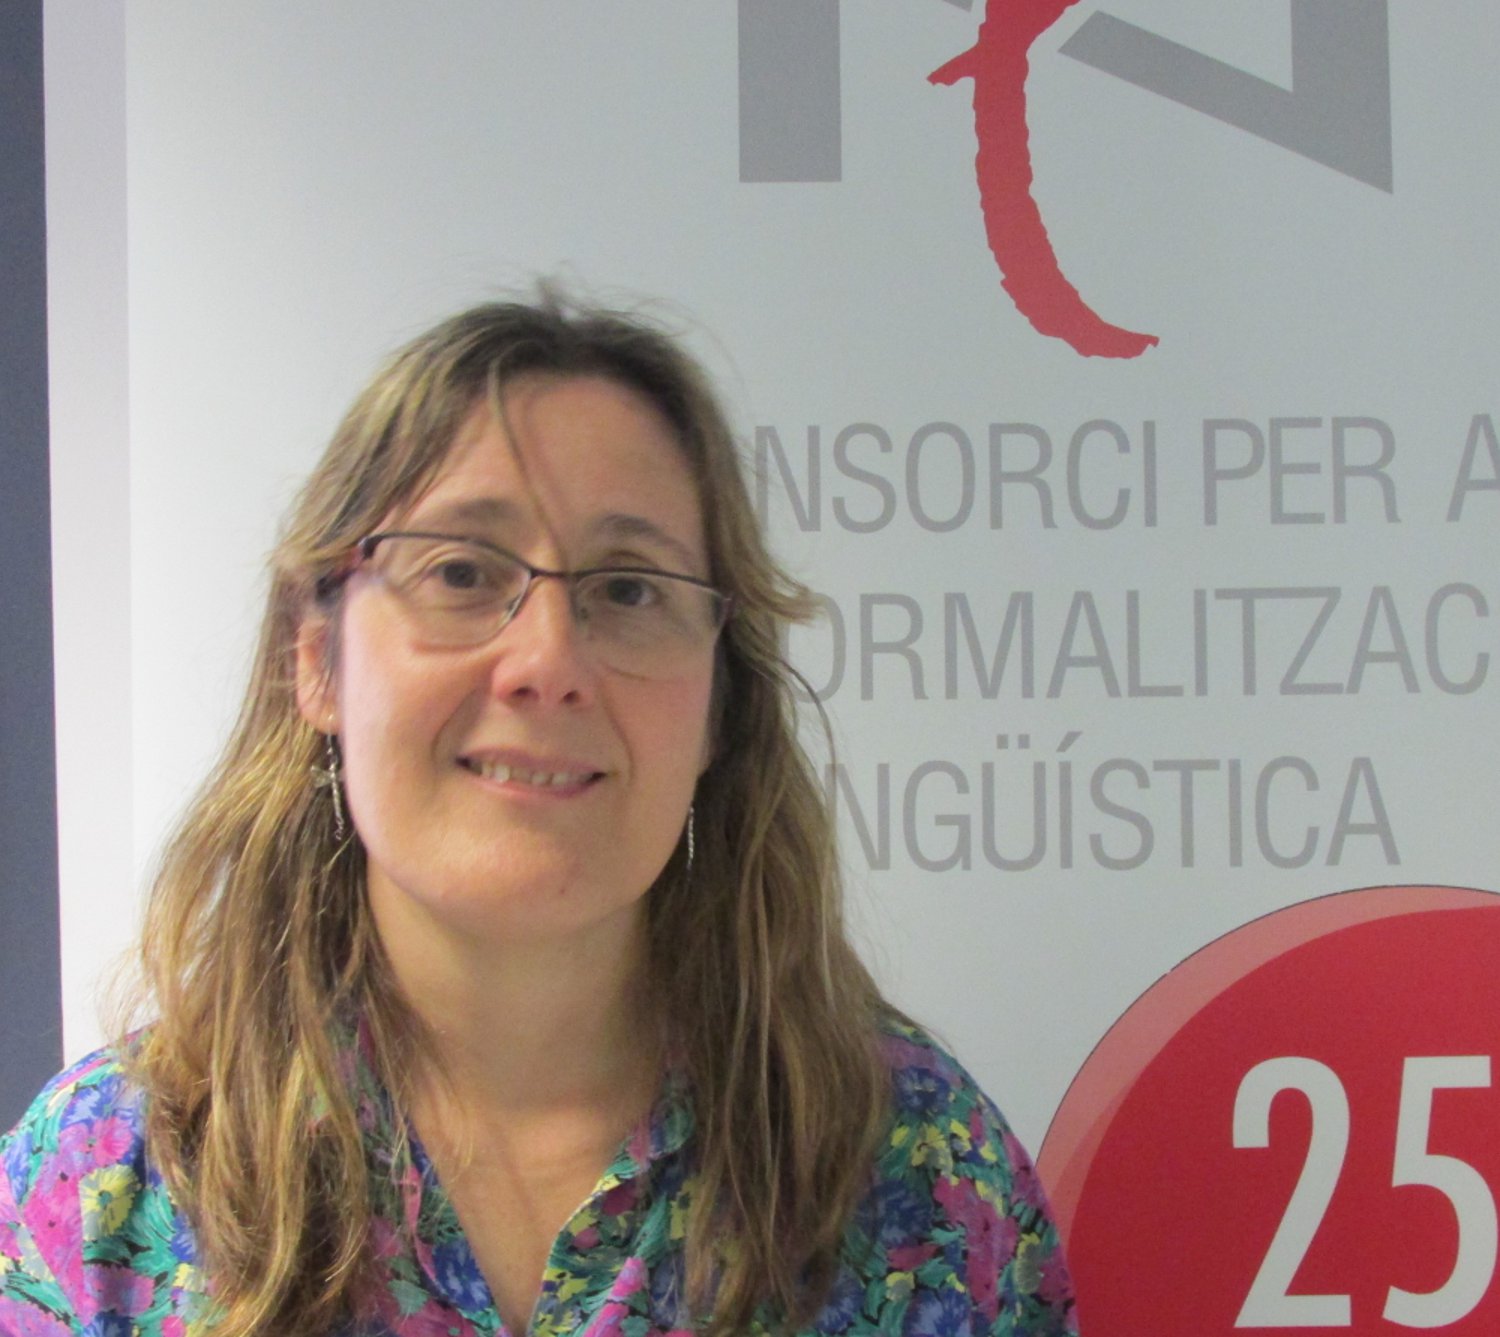    Rosalia Orós, mestra del curs de llenguatge administratiu